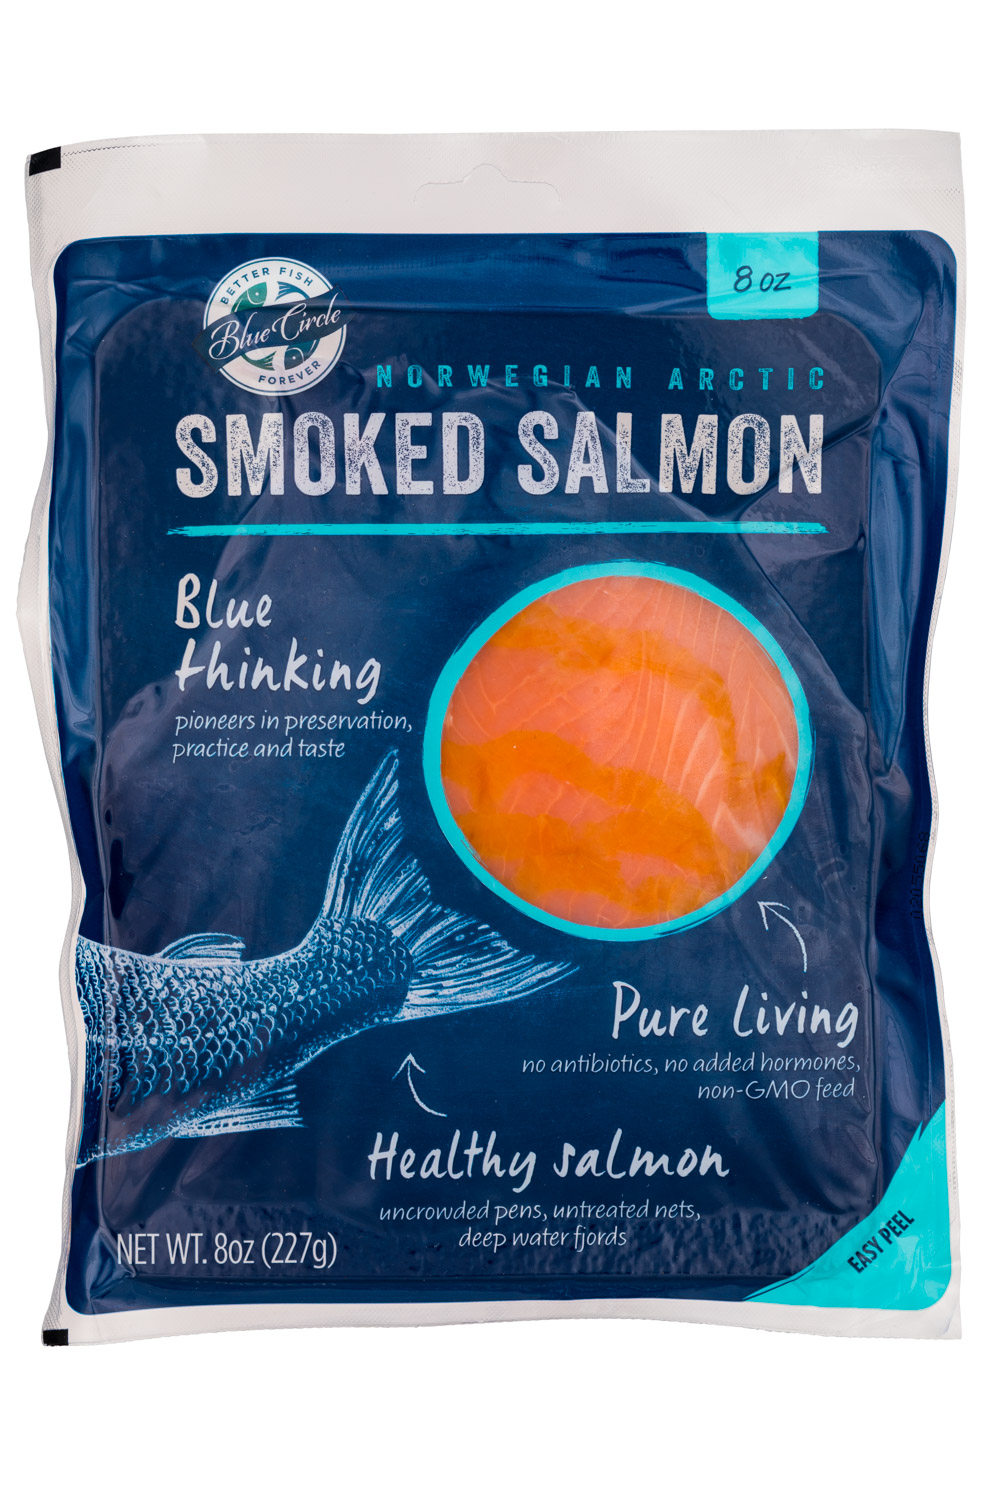 Norwegian Arctic Smoked Salmon